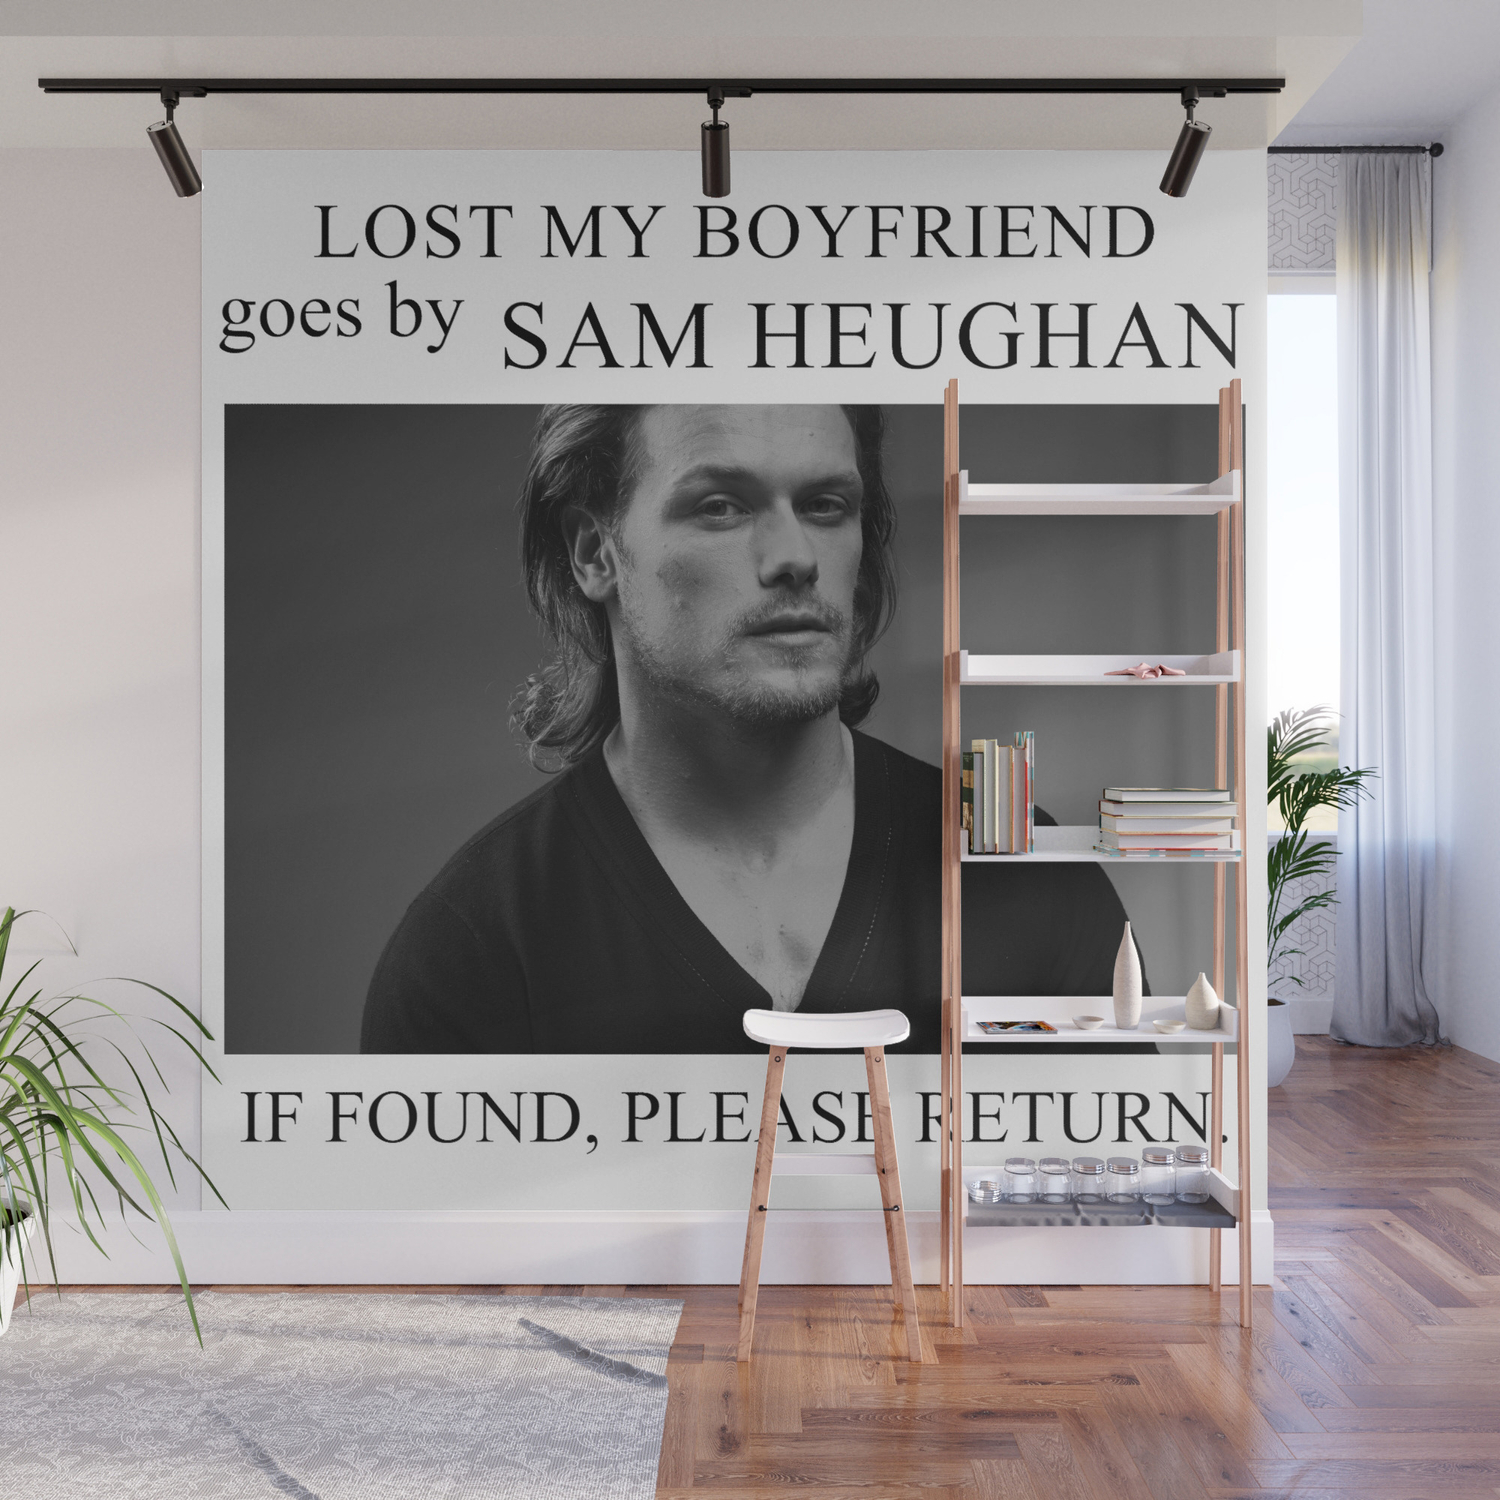 Sam boyfriend is heughans Sam Heughan